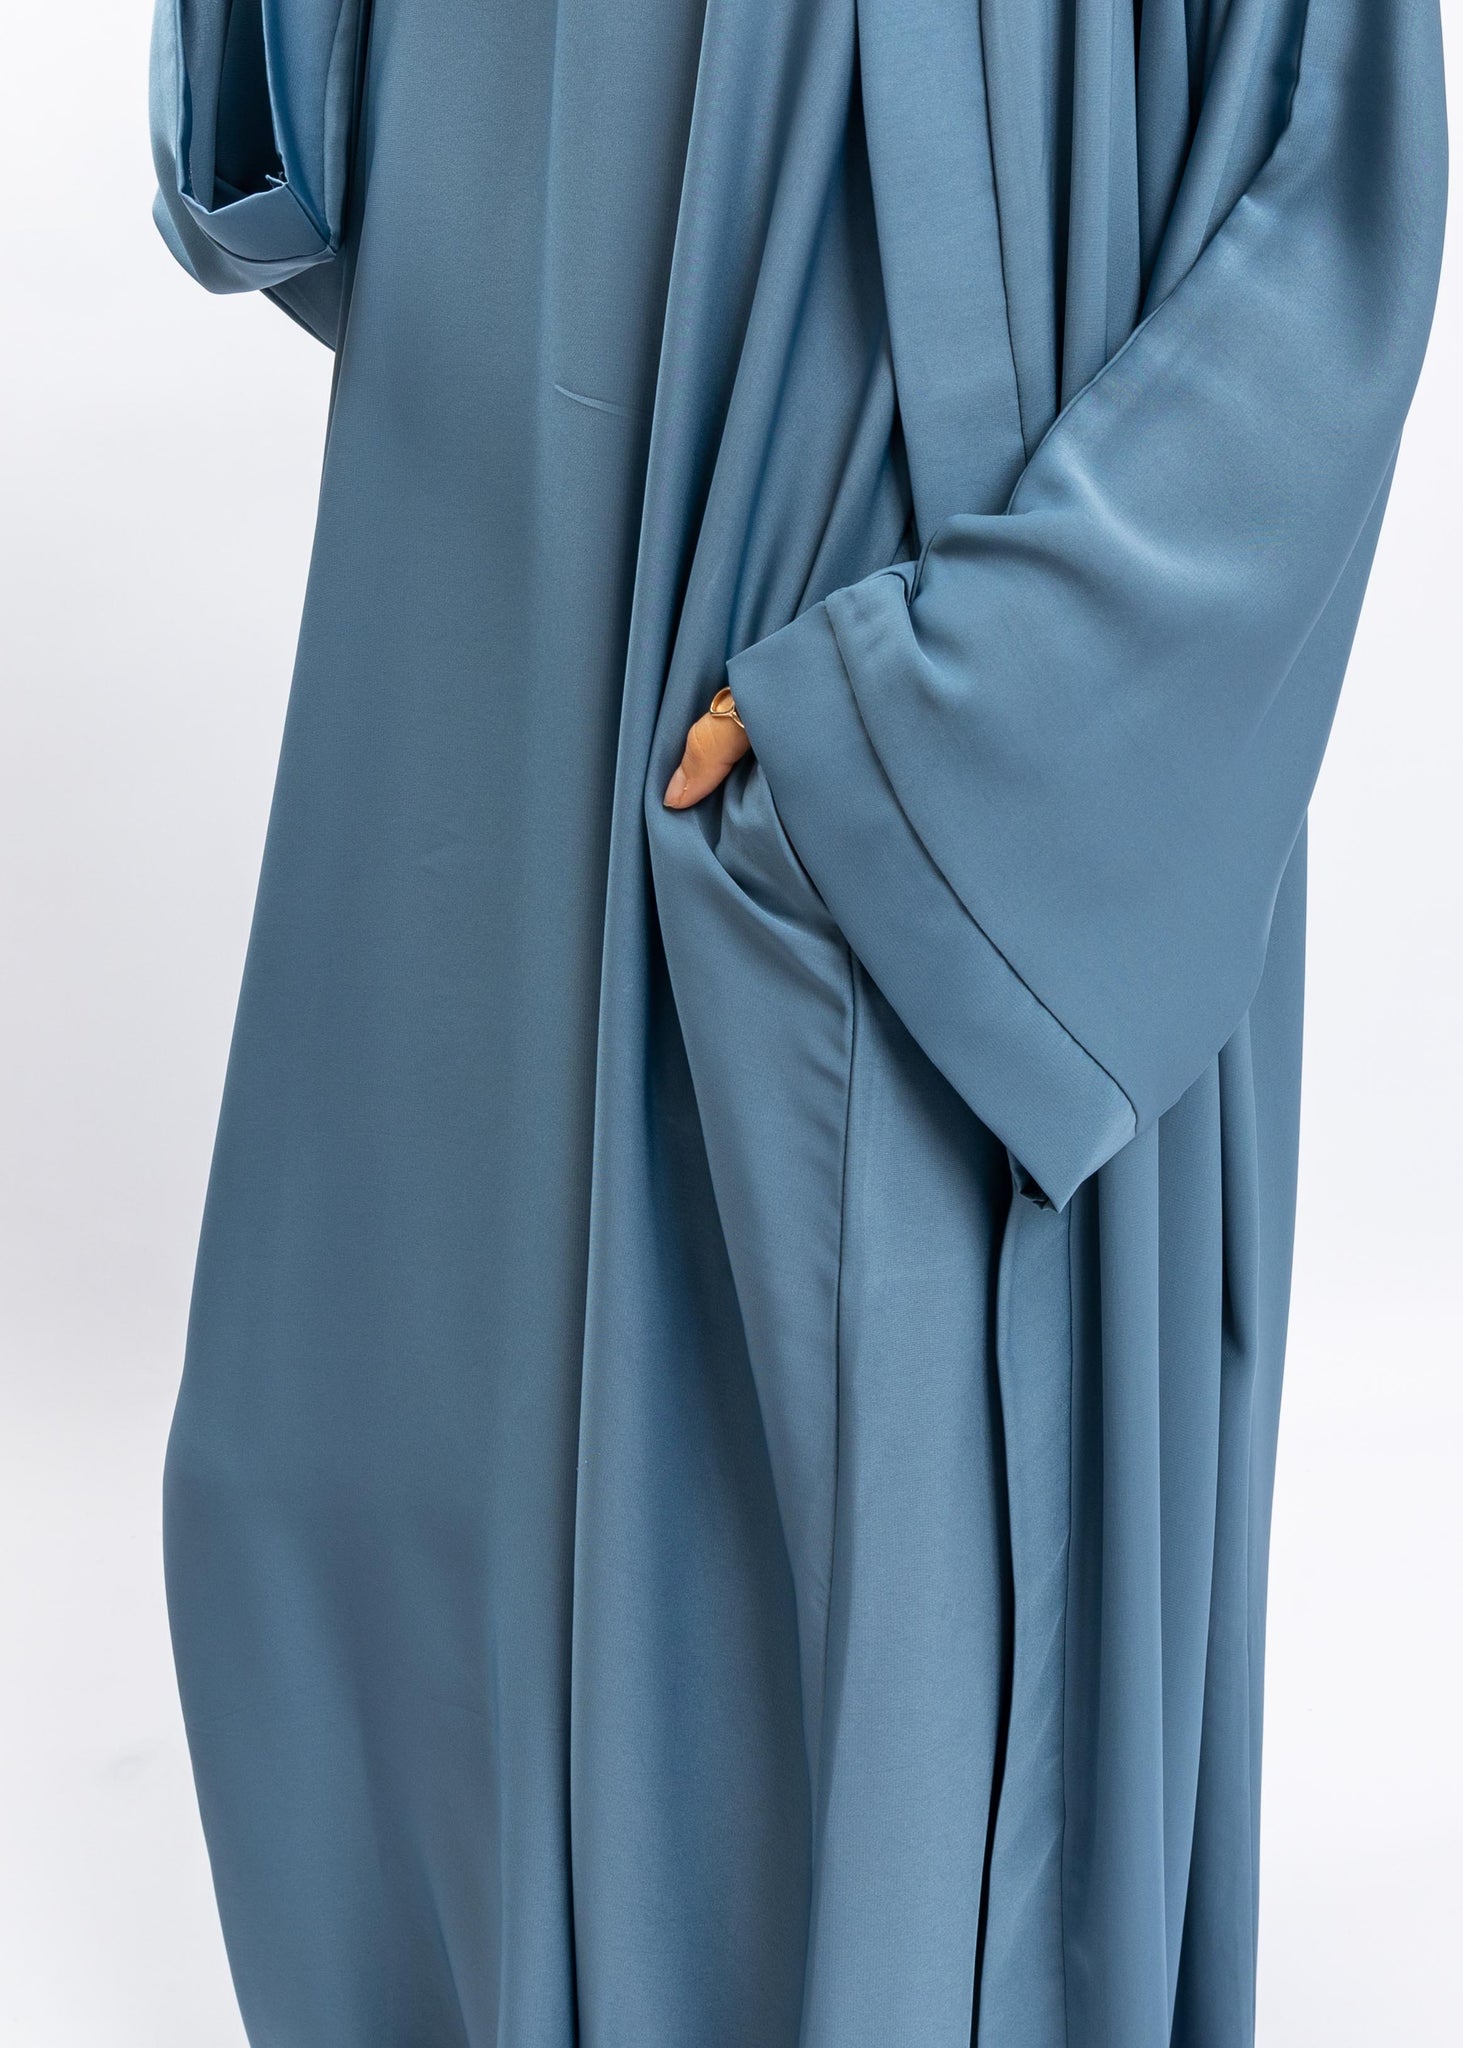 Baby blue sleeveless abaya (sleeveless only)